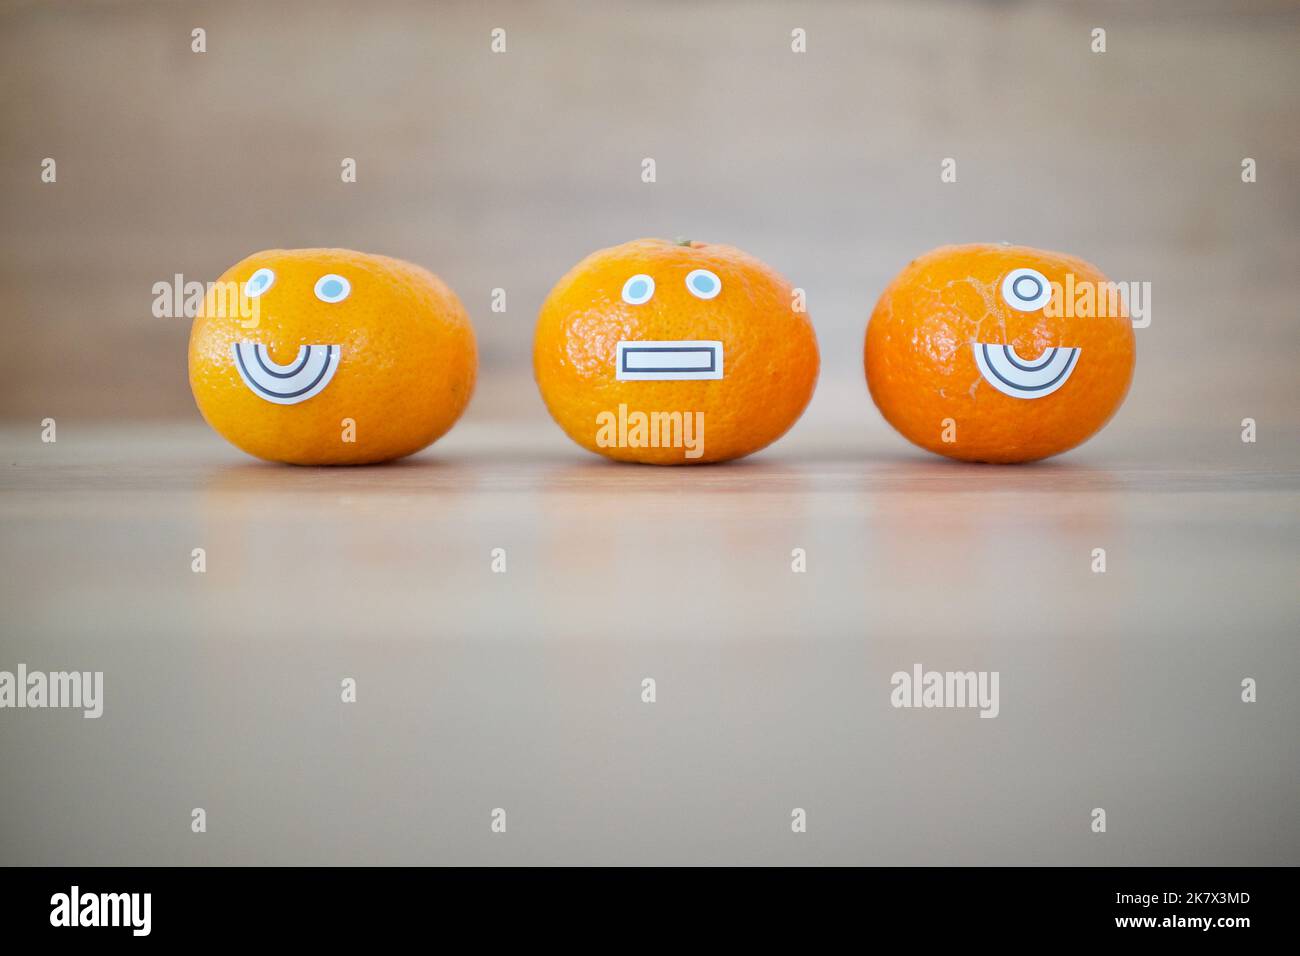 3 Mandarinen mit Mimik. Es gibt ein Smiley-Gesicht, ein stummes Gesicht und eines mit einem Smiley-Gesicht mit nur einem Auge. Stockfoto